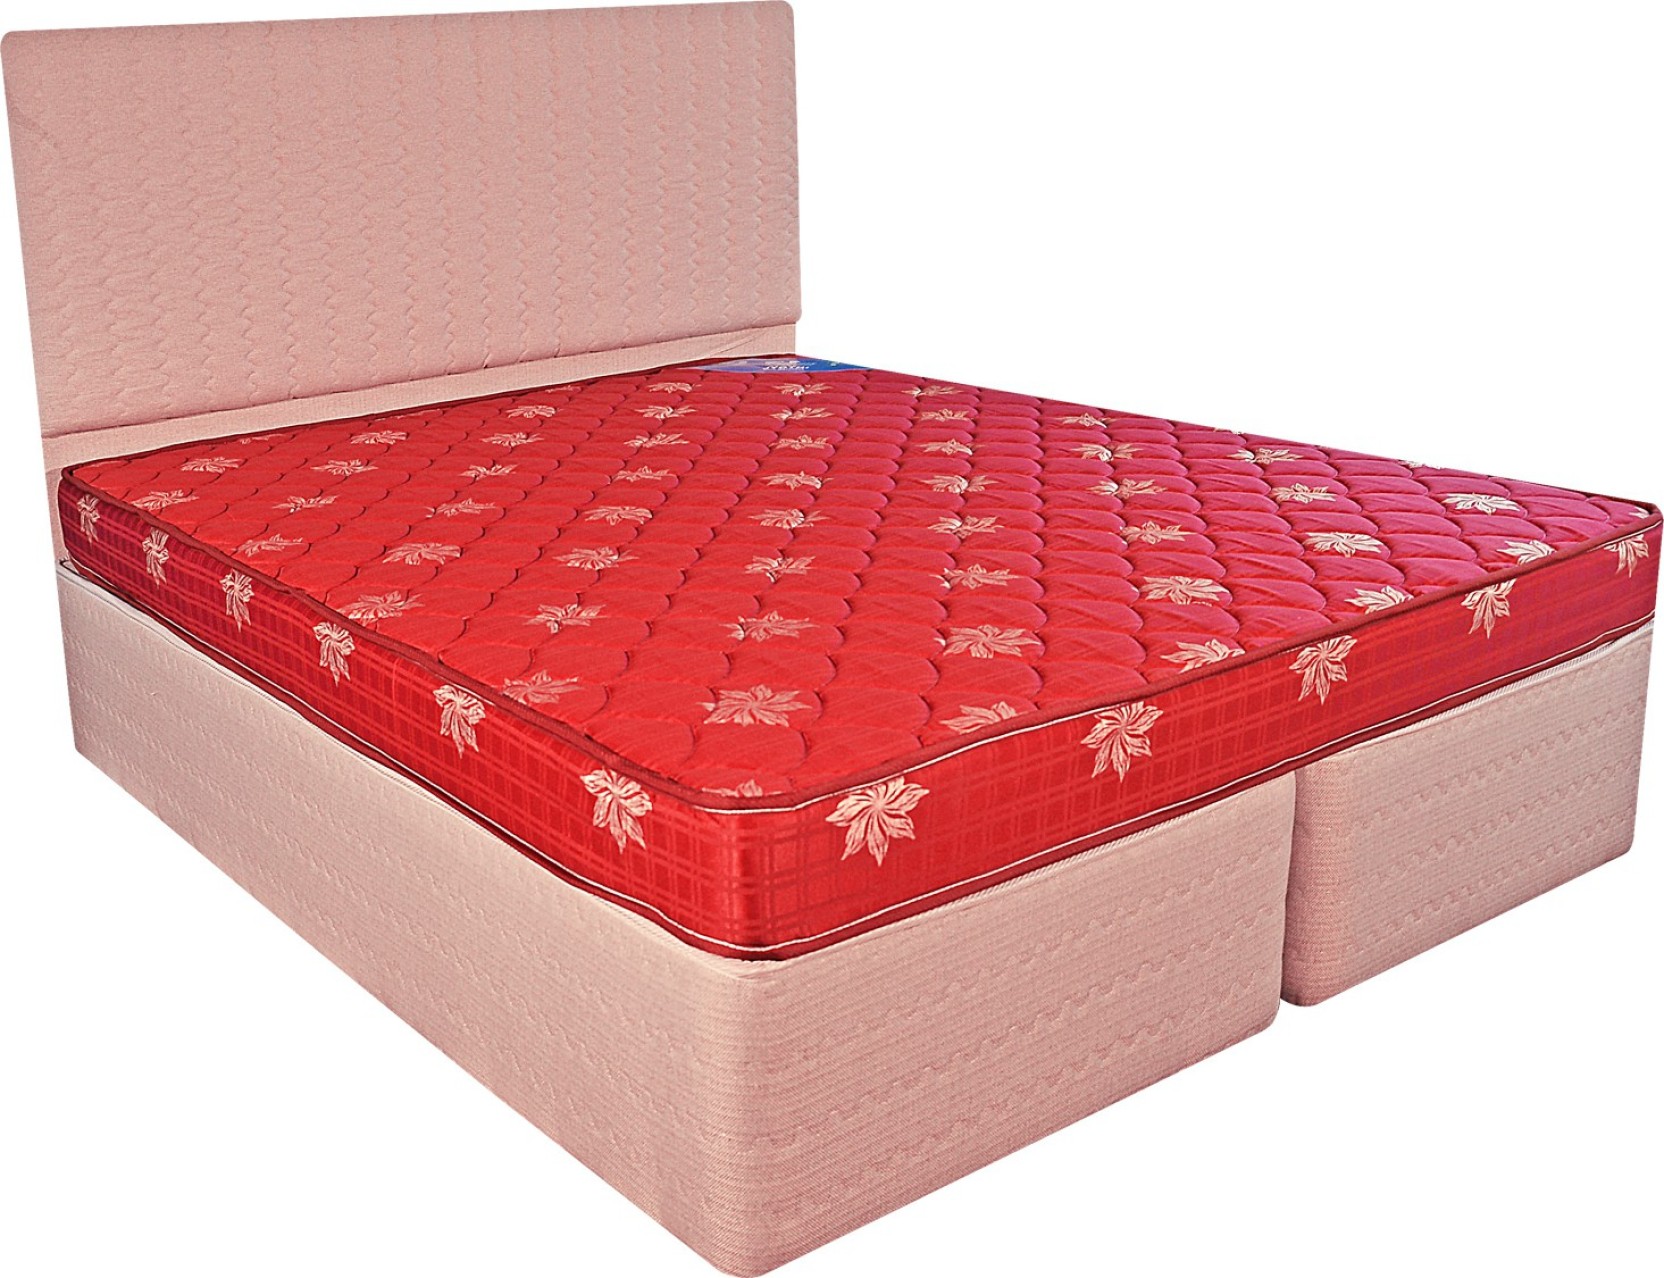 price of coir mattress